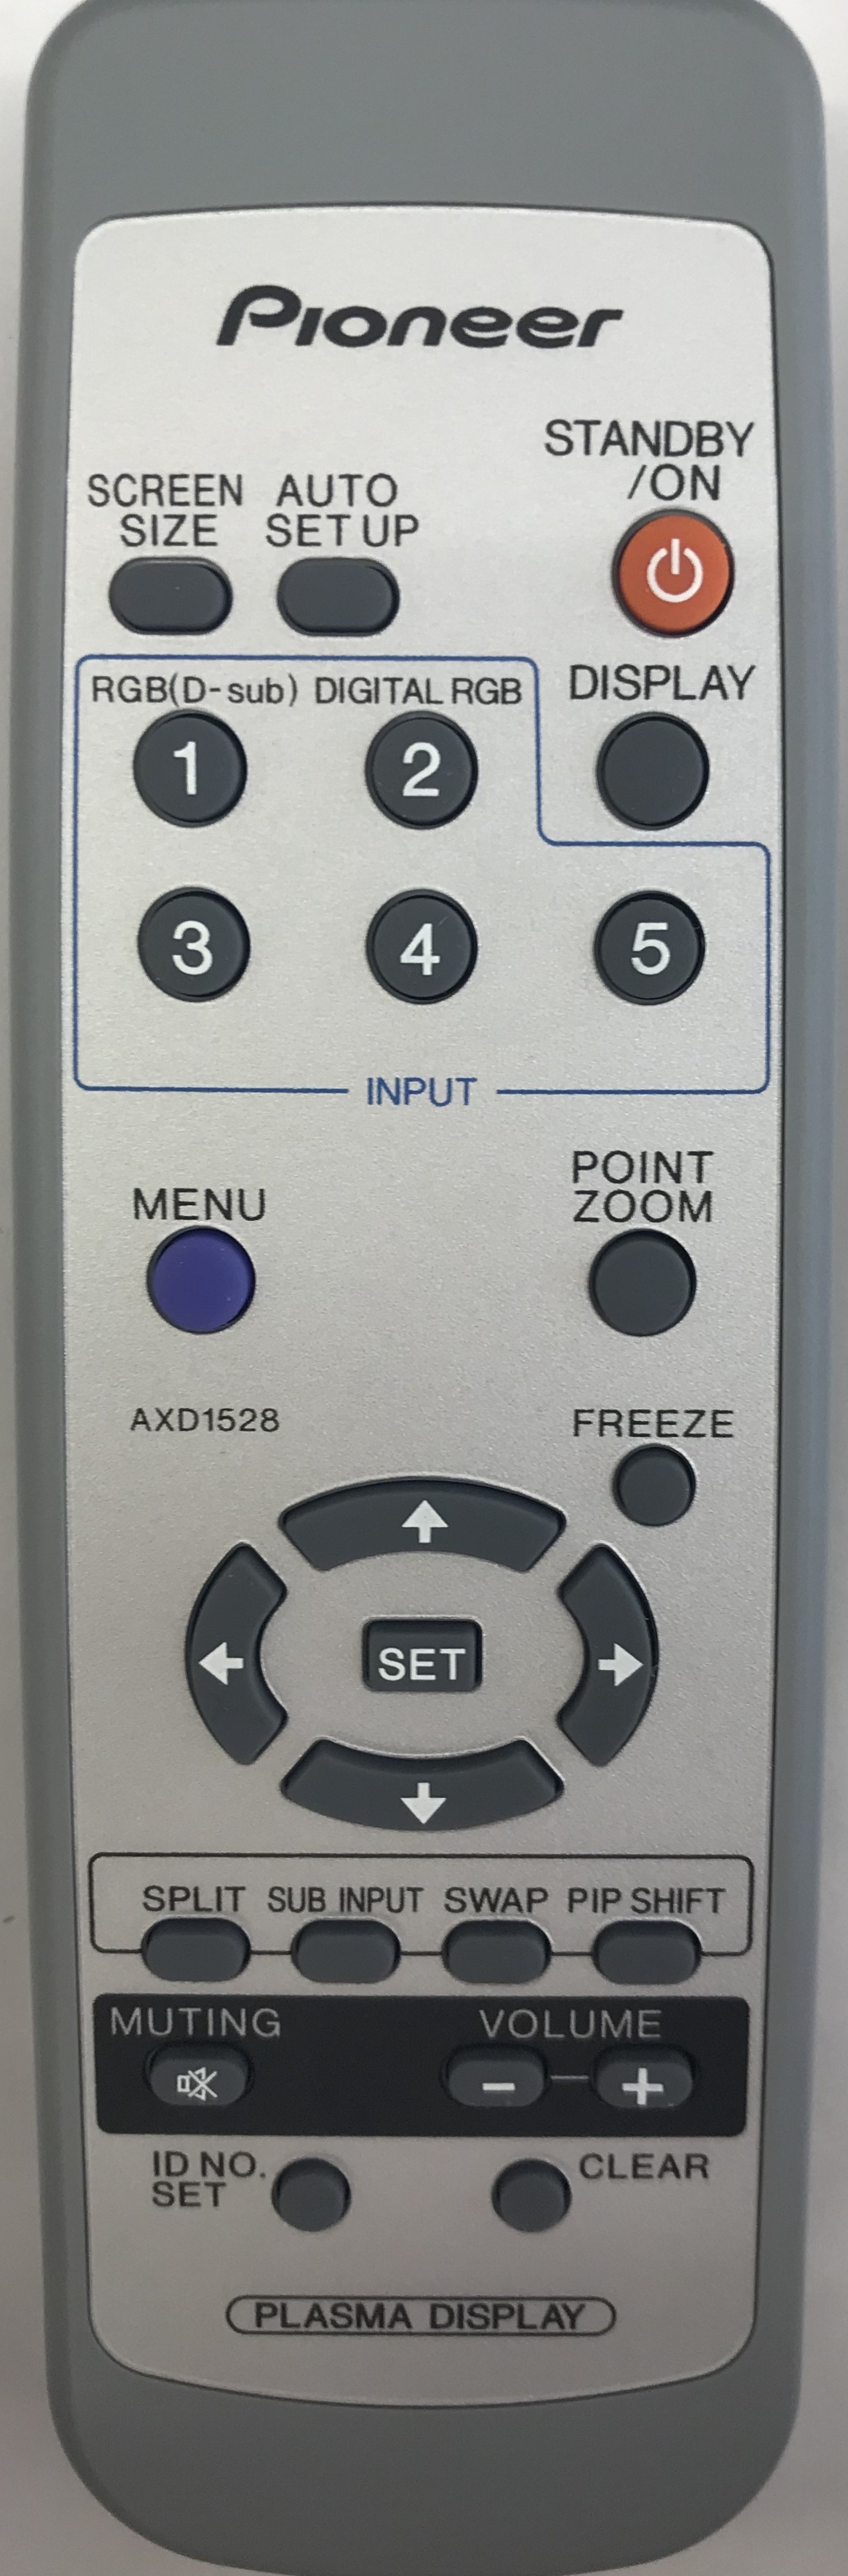 PIONEER AXD1528 Remote Control Original